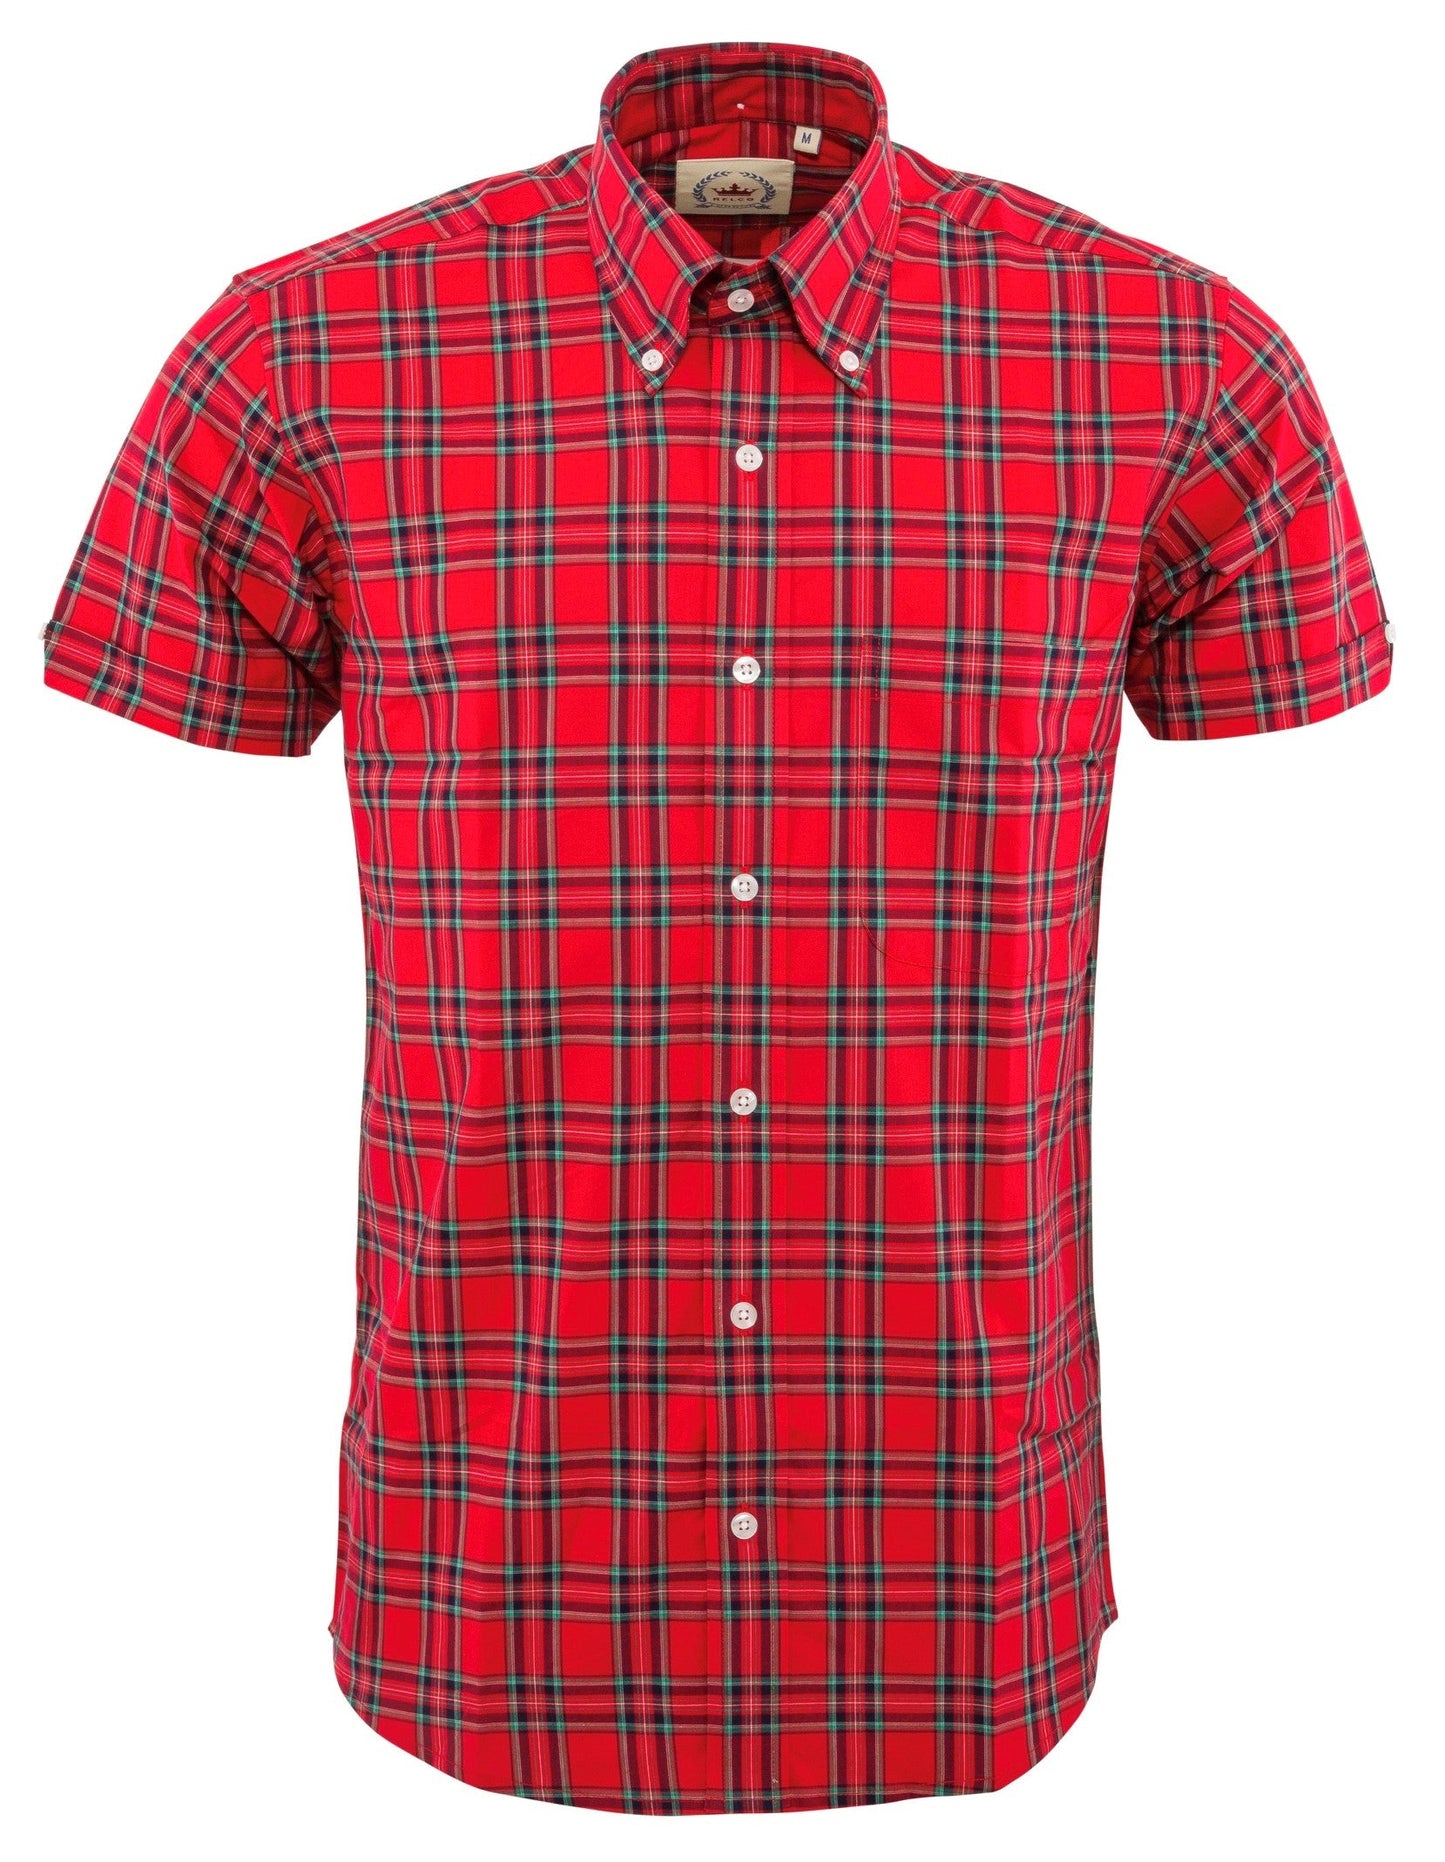 Relco chemises boutonnées à manches courtes à carreaux rouges pour hommes